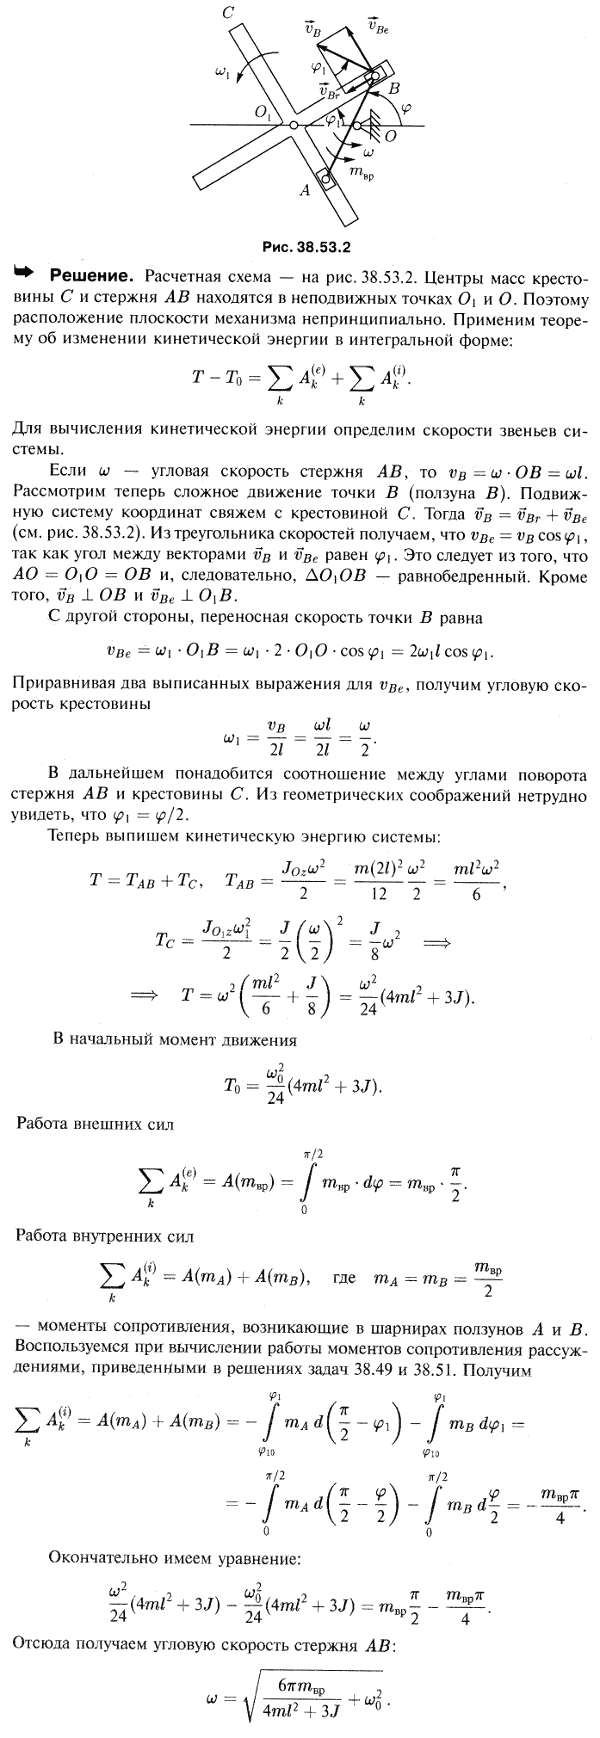 Мещерский 38.53 - Теорема об изменении кинетической энергии материальной системы